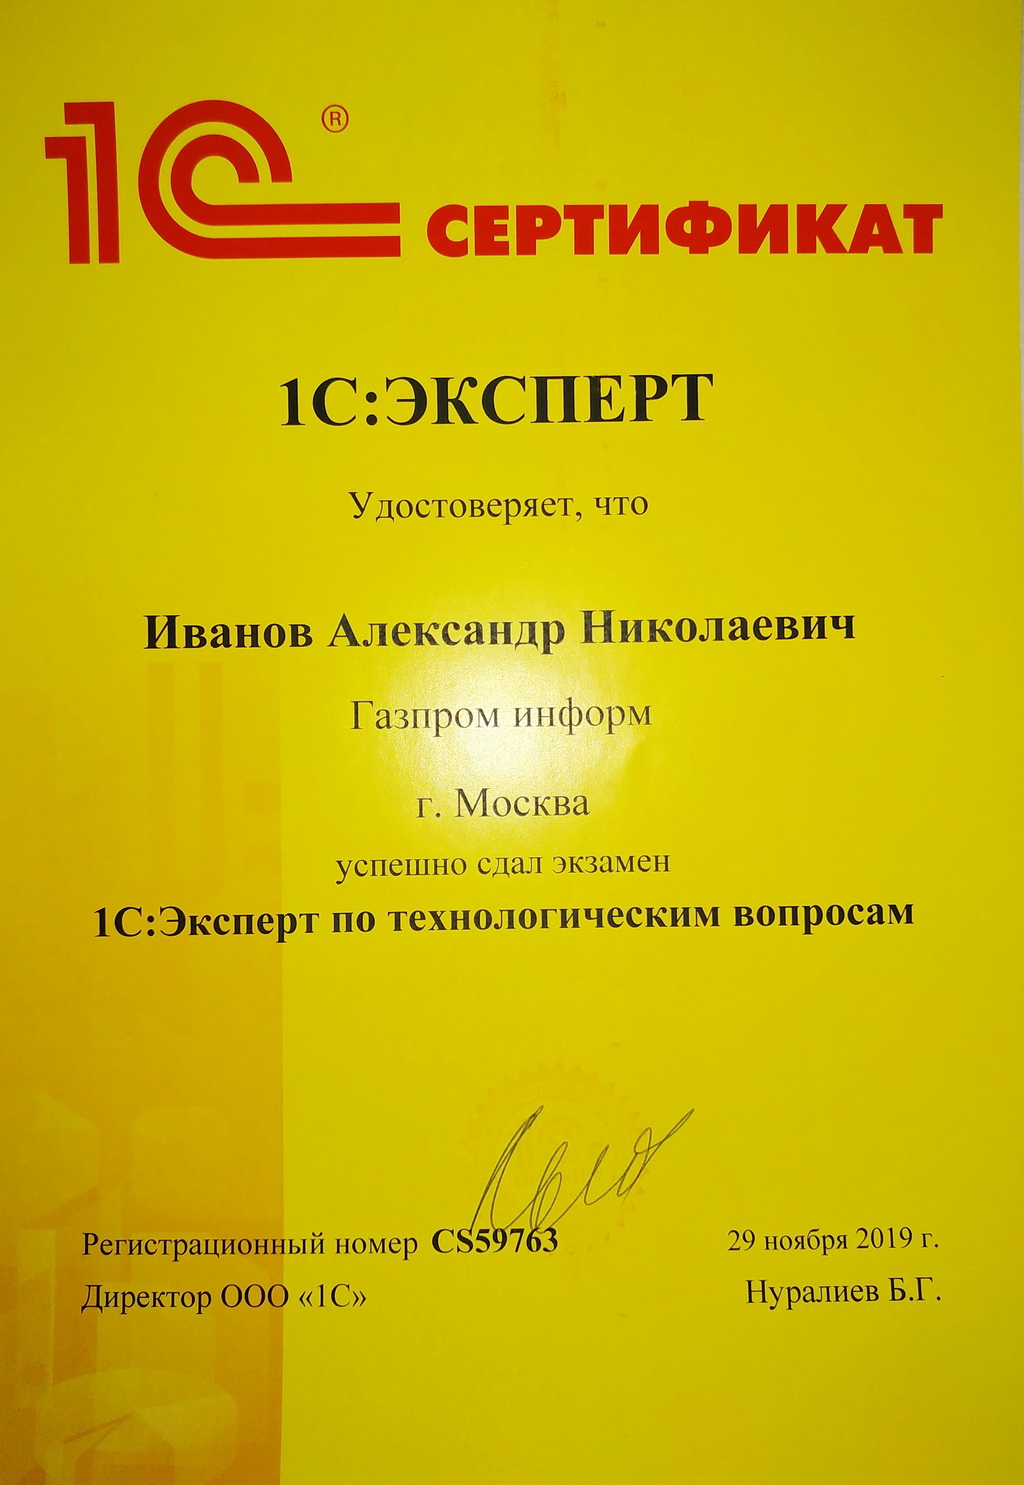 Сертификат "1С:Эксперт"